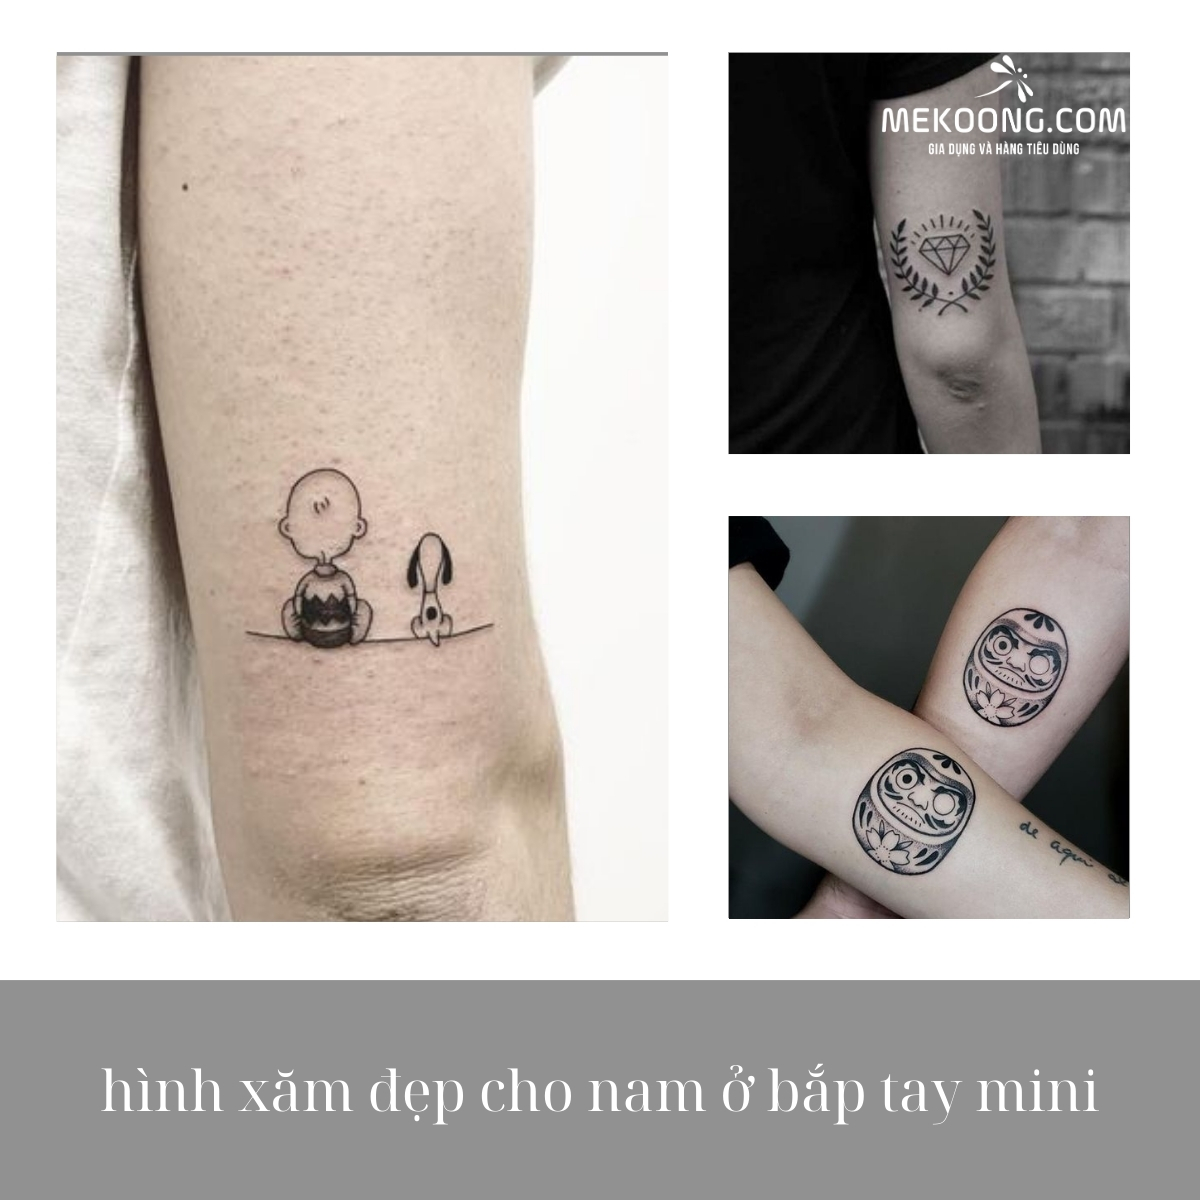 Hình xăm chữ Xăm hình bấm TRUY CẬP để liên hệ | Lotus flower tattoo,  Tattoos, Flower tattoo